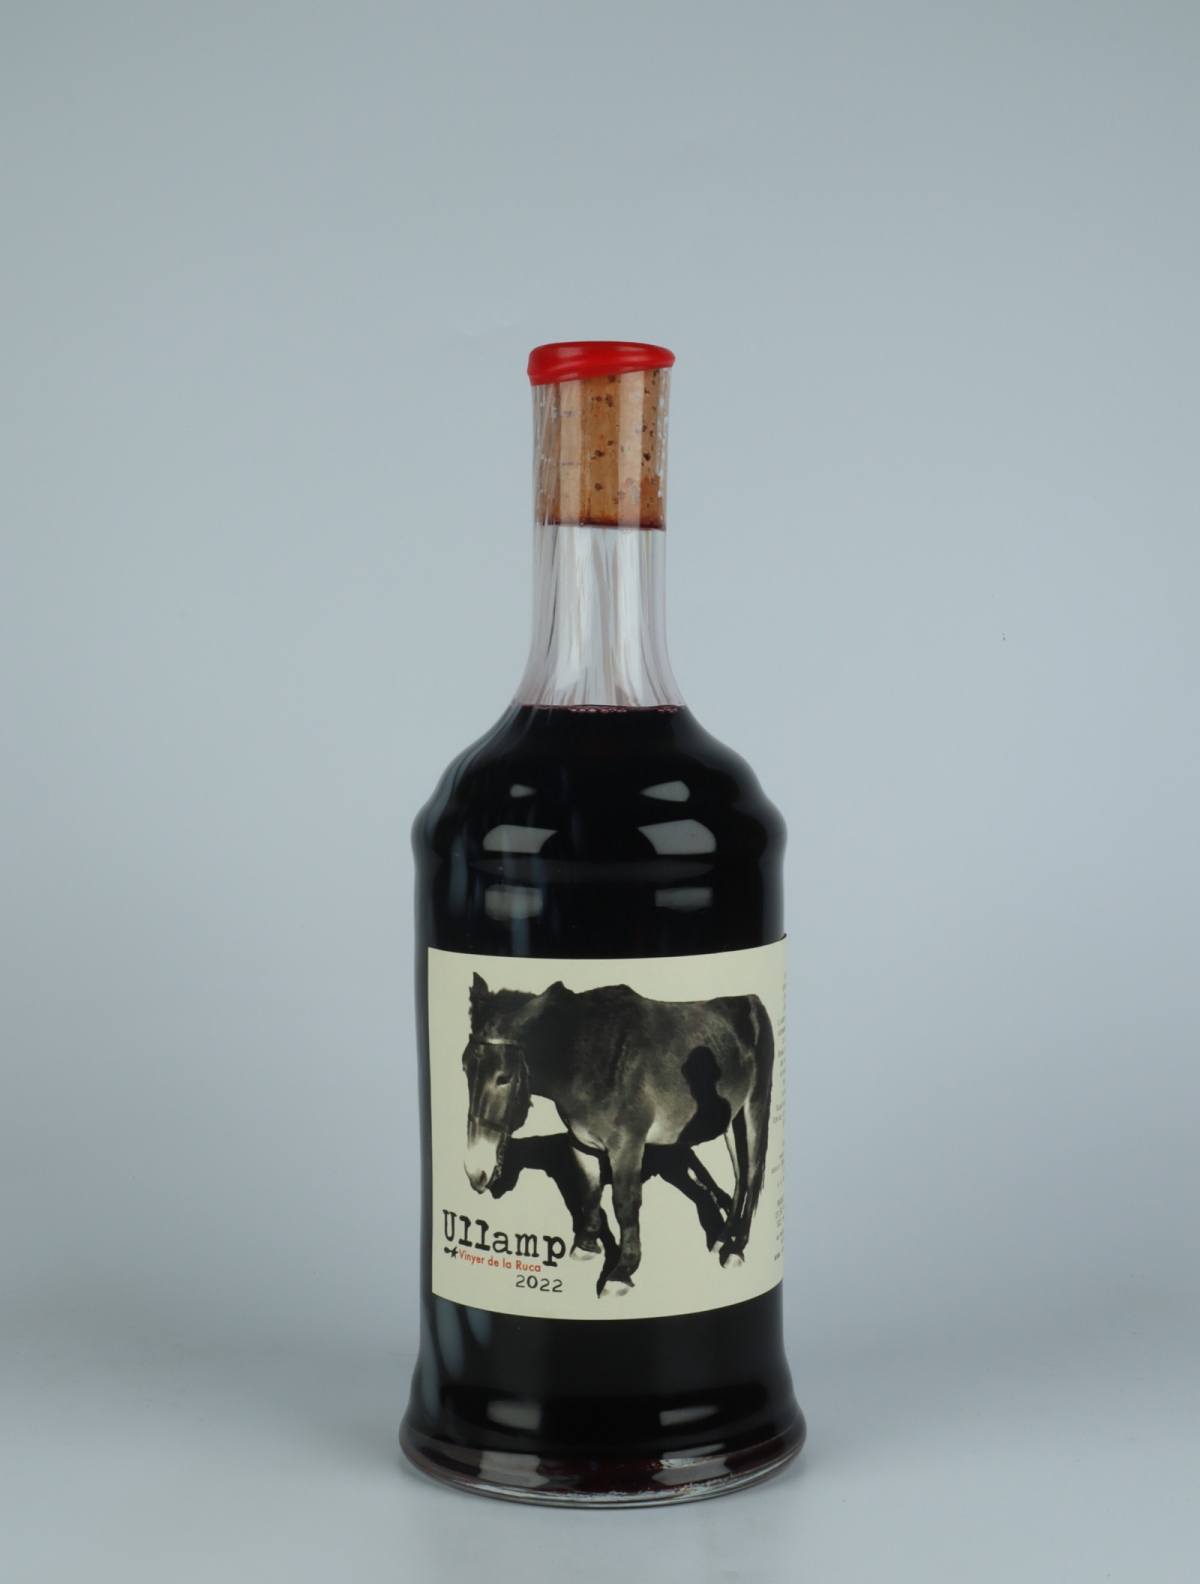 En flaske 2022 Ullamp Rødvin fra Vinyer de la Ruca, Rousillon i Frankrig